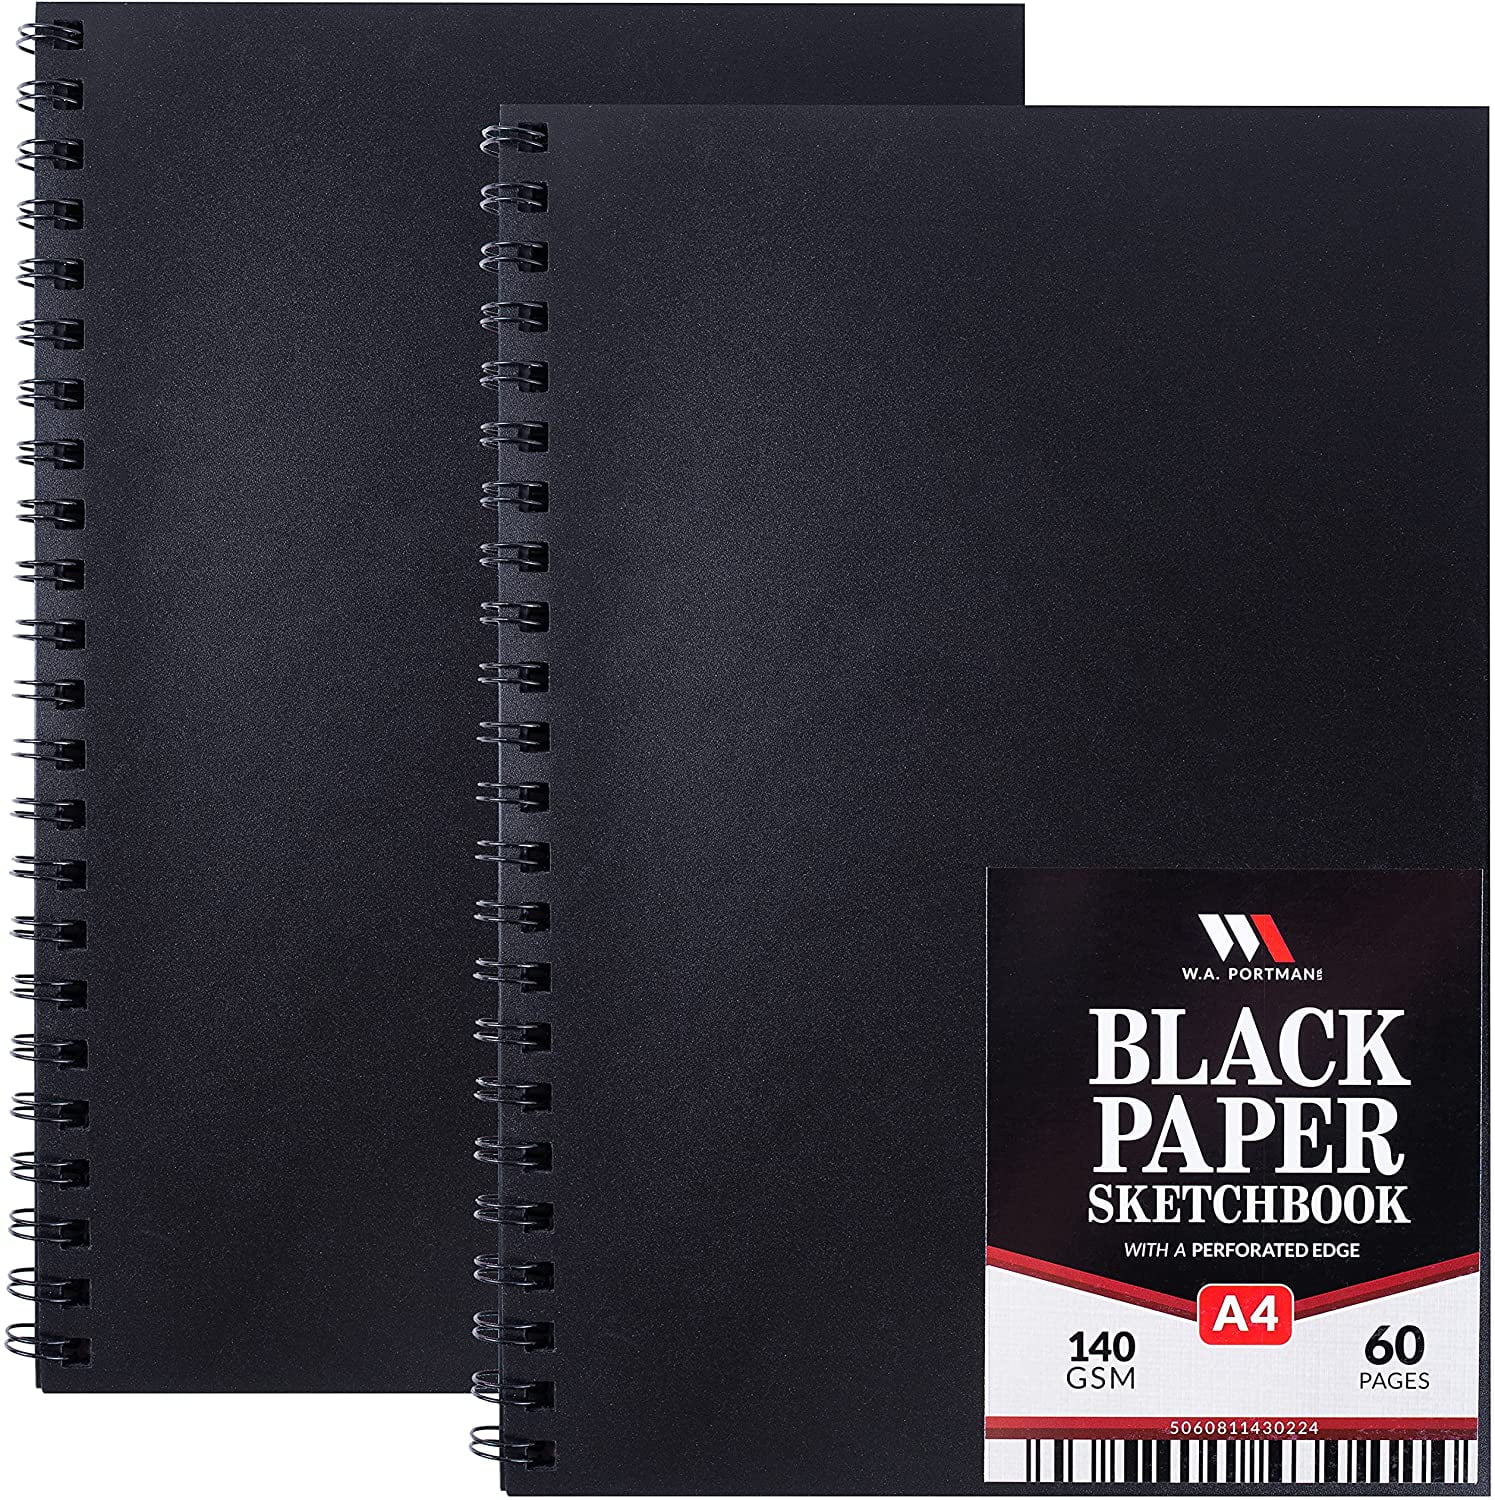 Black Paper Sketchbook: A 8.5 x 11 Blackout Sketchbook For Use With Gel &  Metallic Pens - Reverse Color Sketchbook With Black Pages (Paperback)